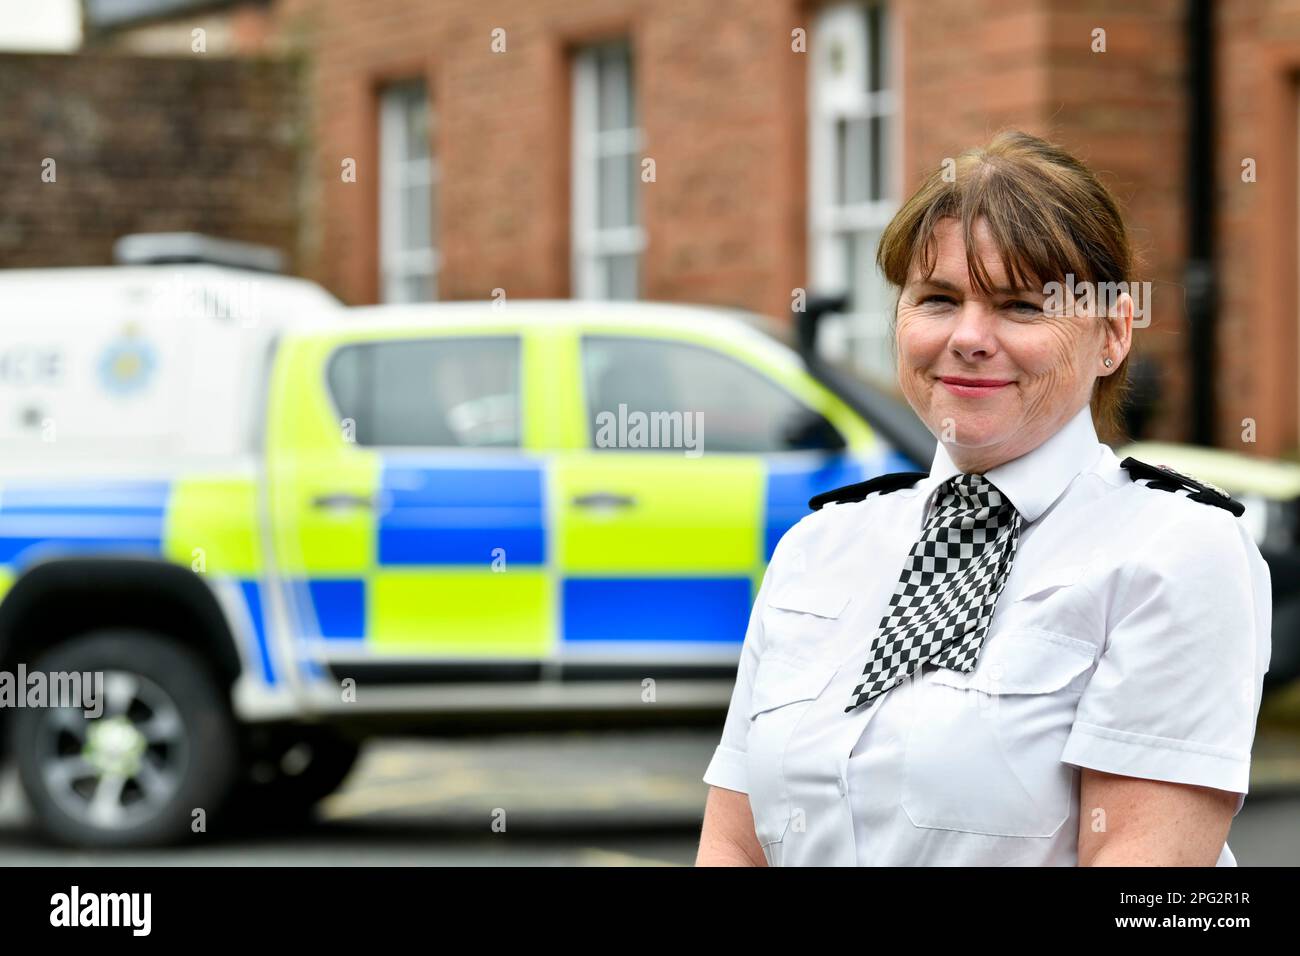 Michelle Skeer, chef de police de Cumbria. Photographié à l'extérieur du quartier général de la police Carlton Hall, Penrith, Cumbria Banque D'Images